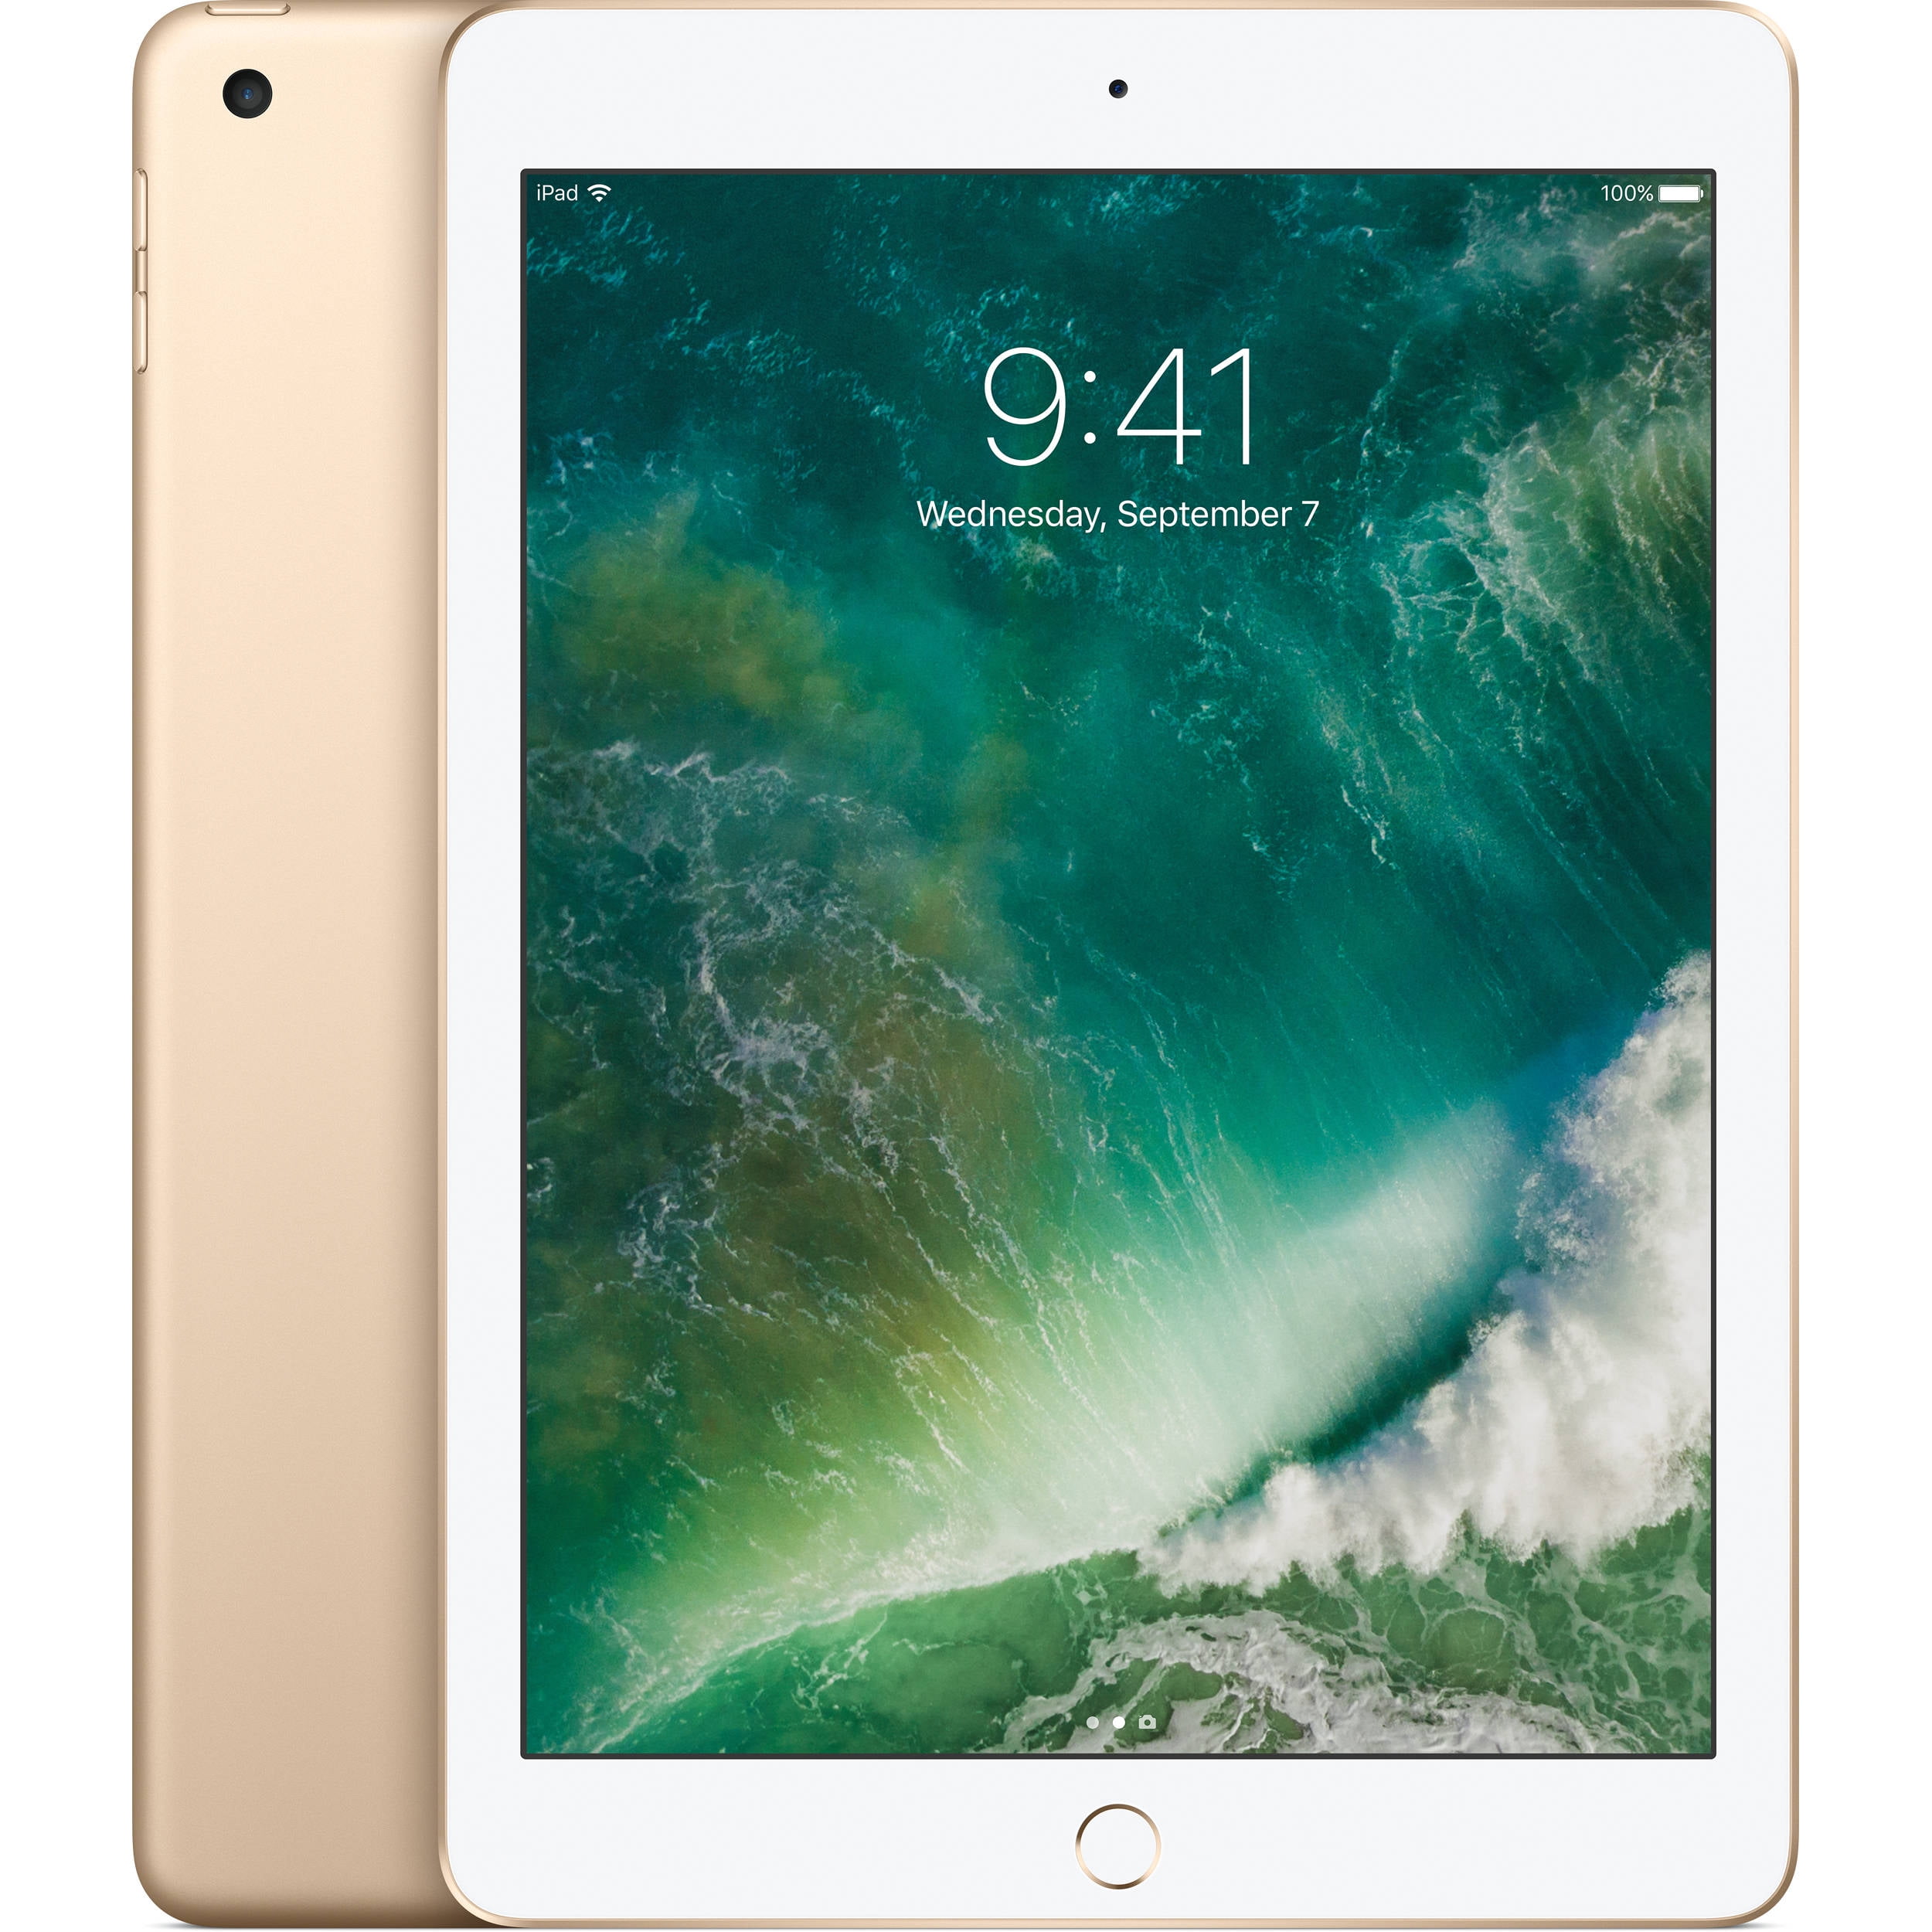 Apple iPad 2017 (Refurbished) 32GB Wi-Fi - Space Gray